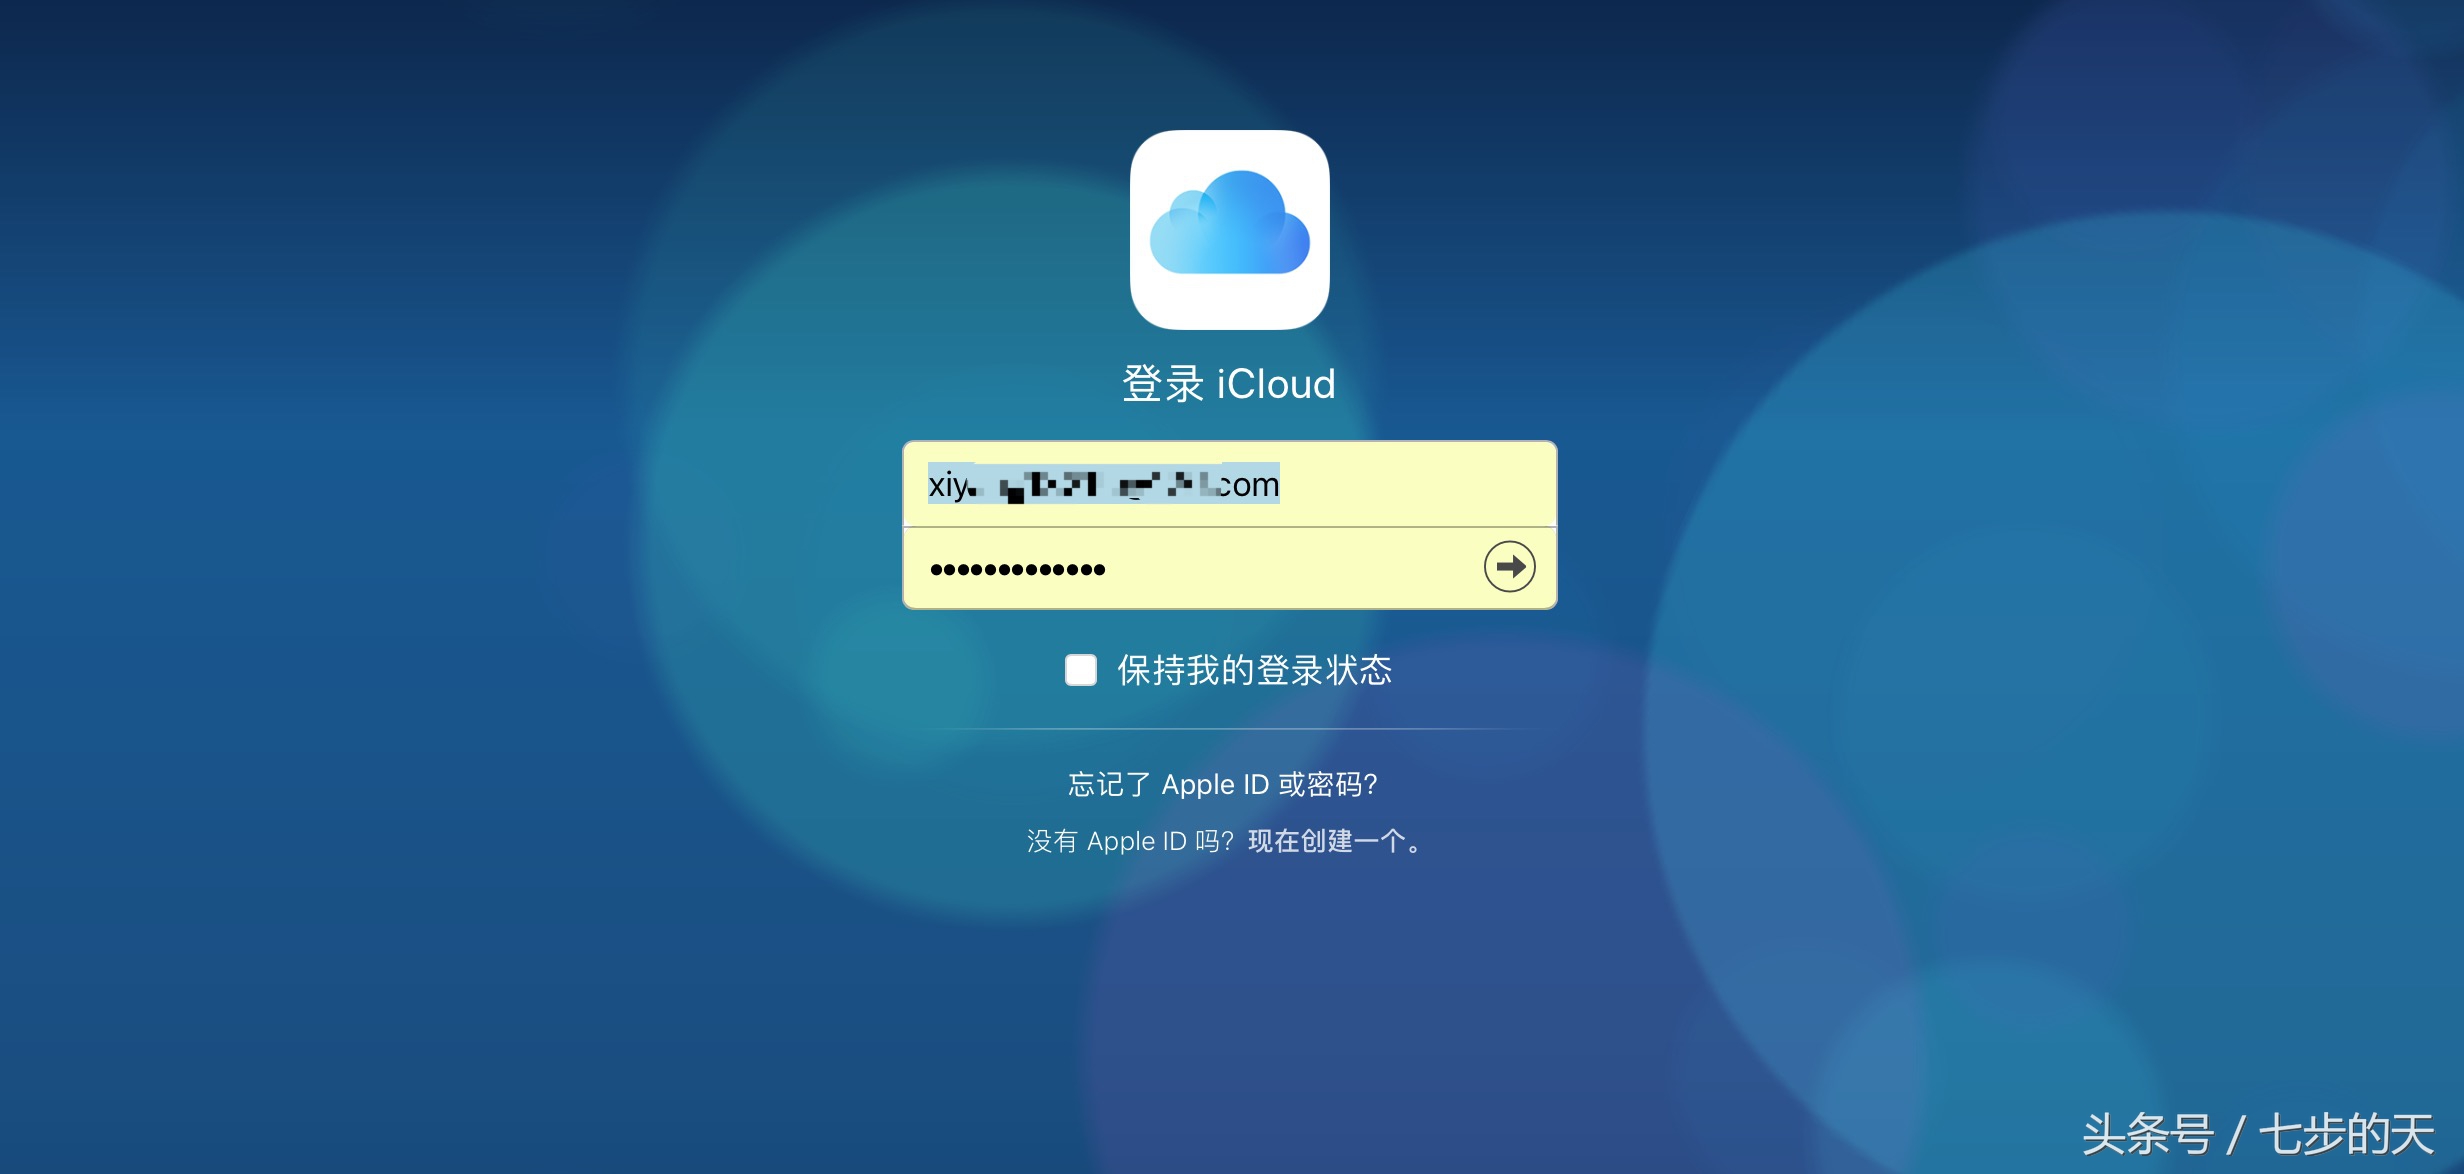 如何通过苹果账号Apple ID登录iCloud邮箱？